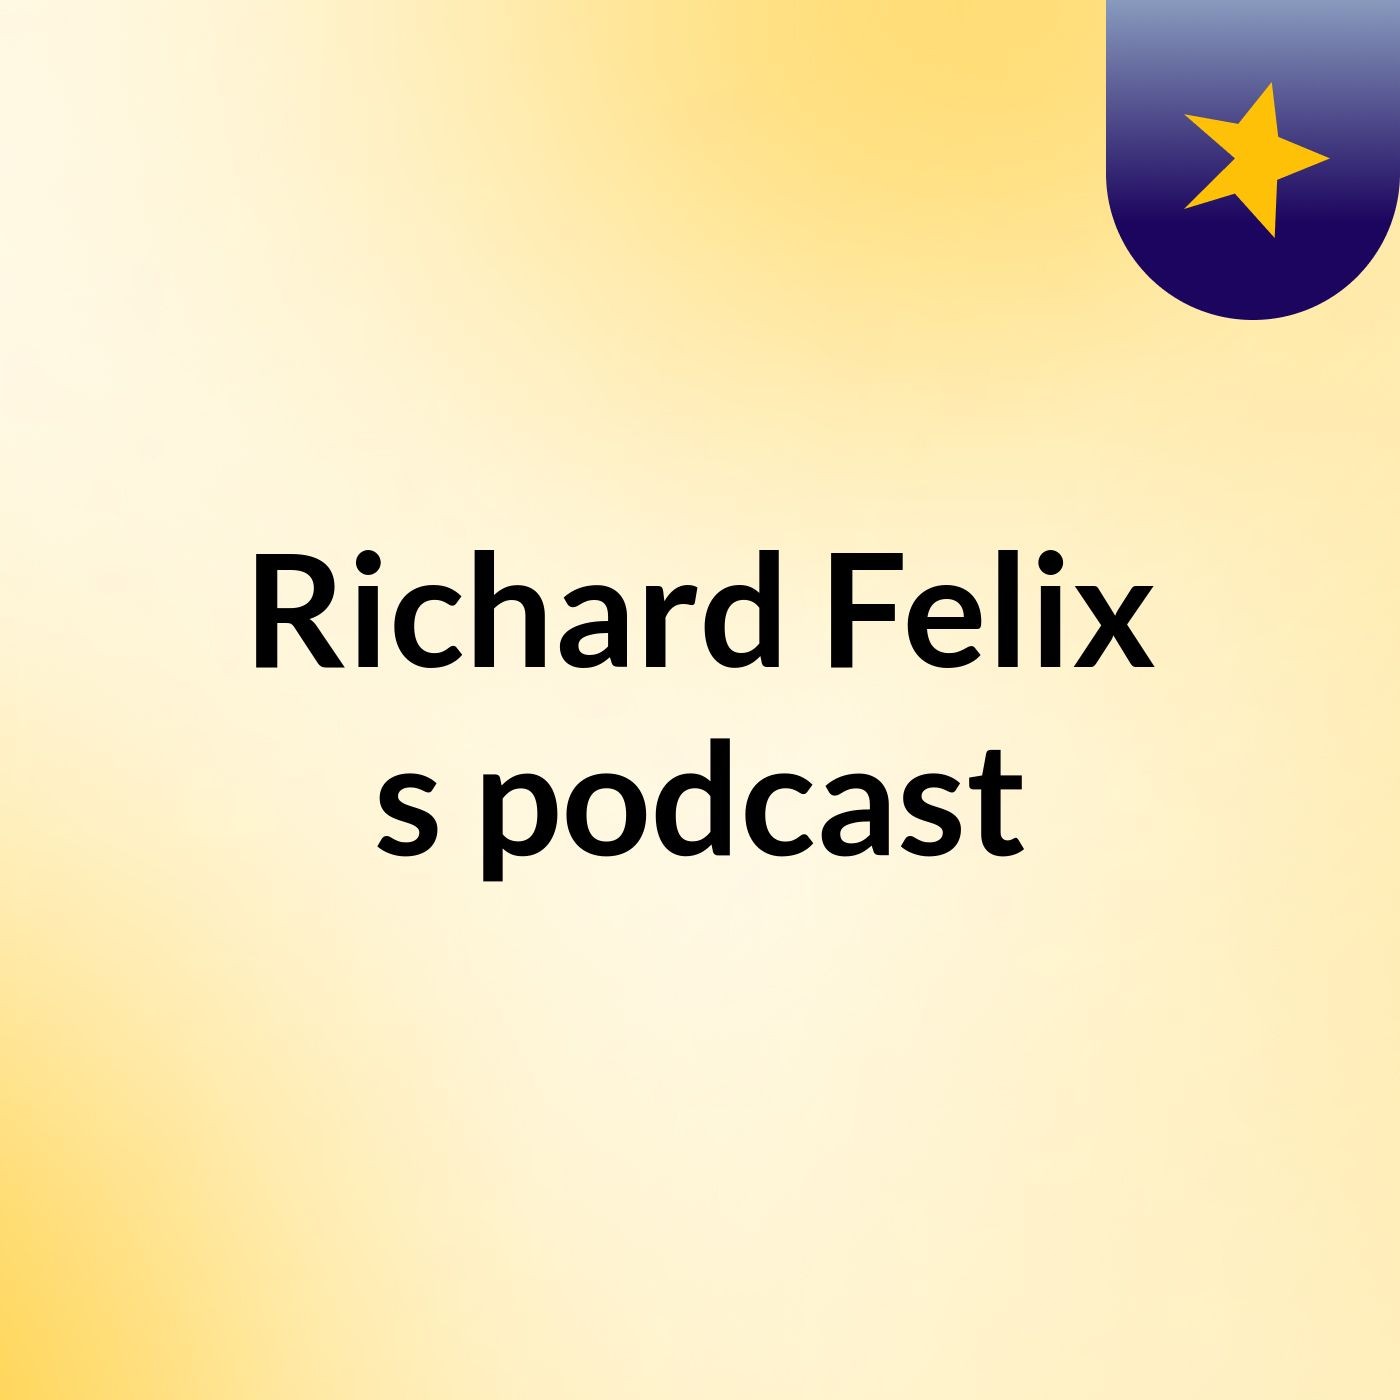 Richard Felix's podcast